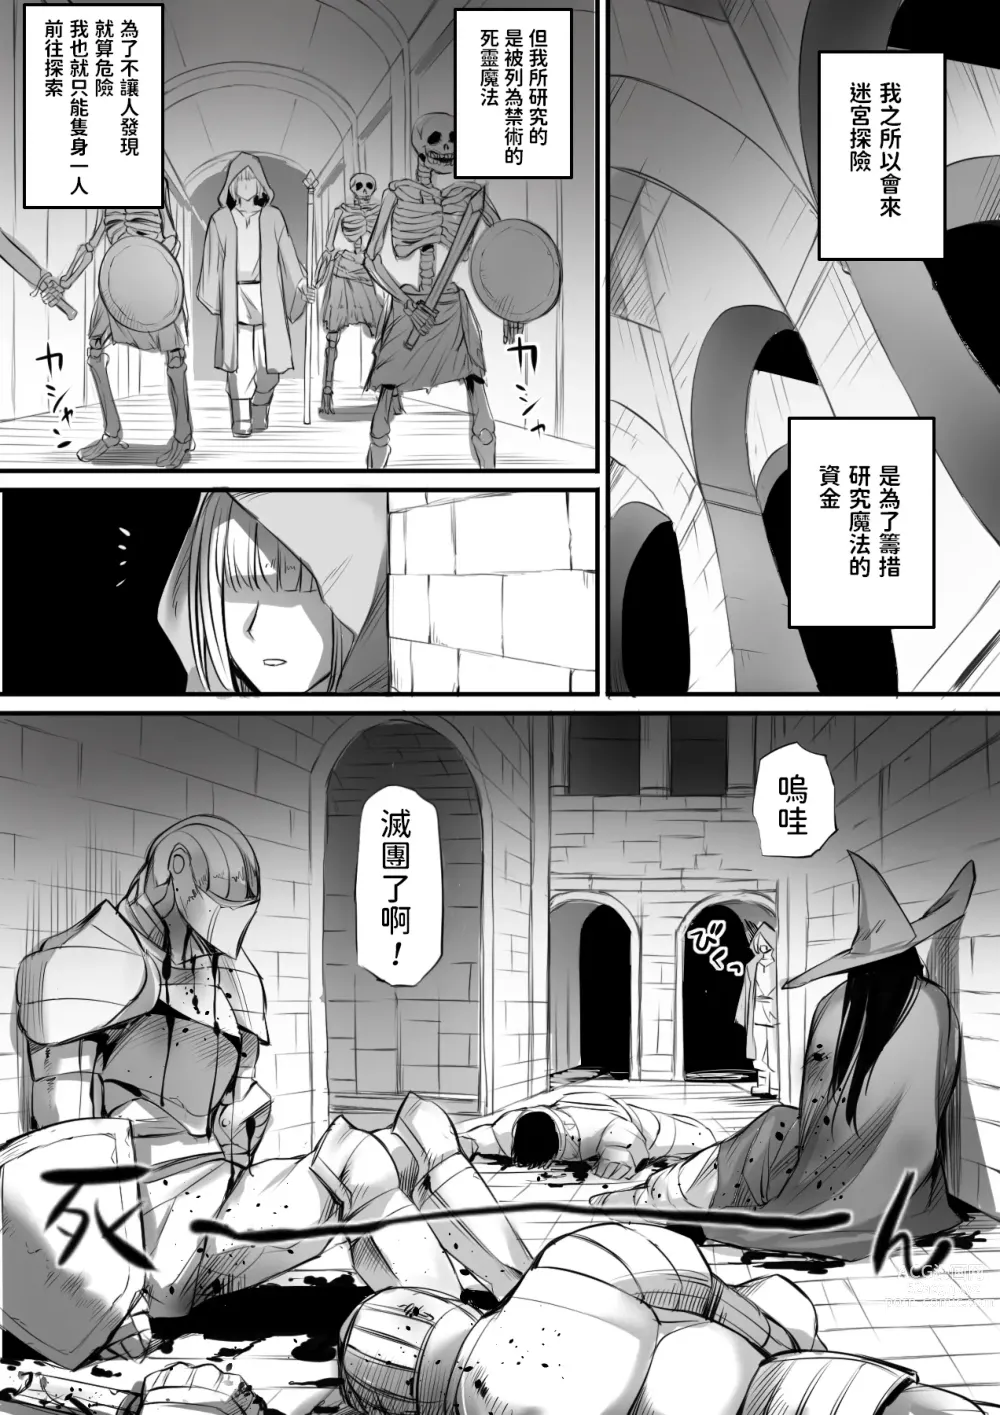 Page 2 of doujinshi 迷宮で格闘娘の死体を拾ってキョンシーにしてみた話